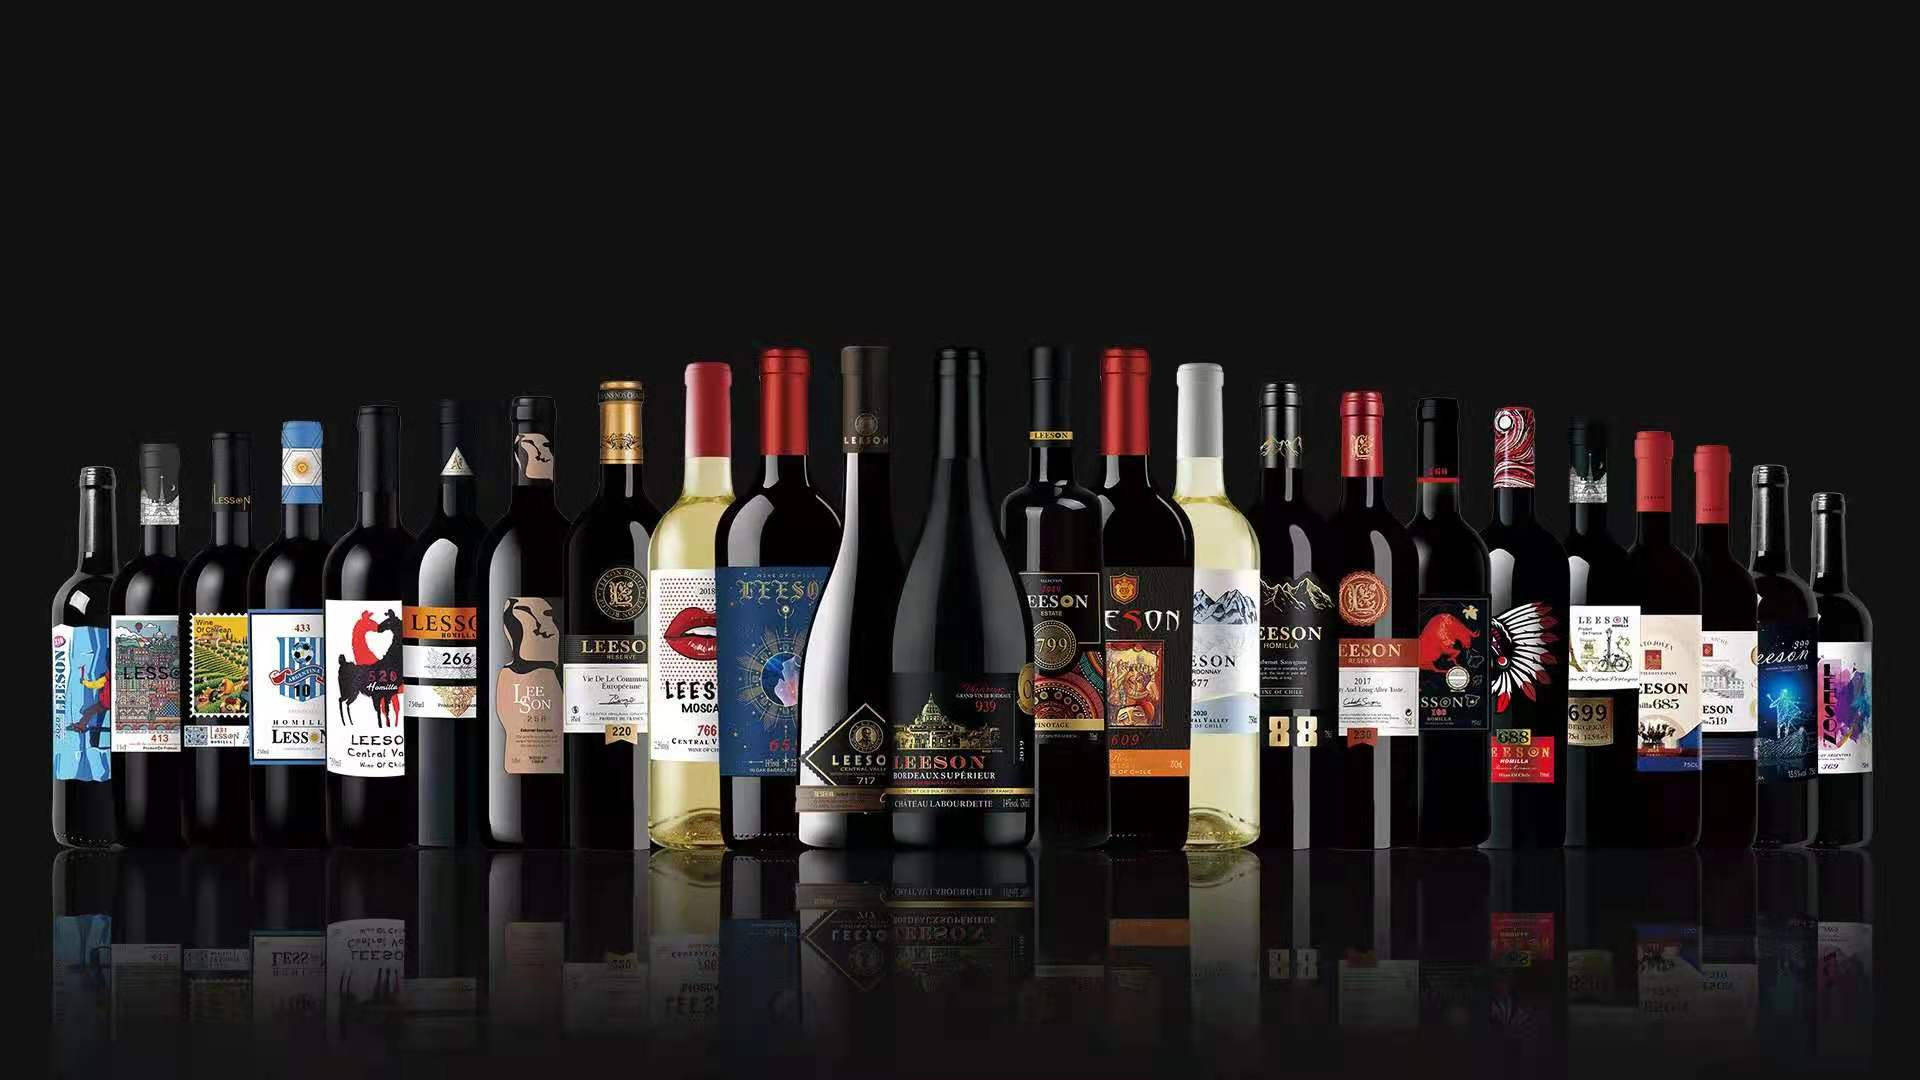 它采用多国家采购,多葡萄酒品种,多价位区间的全系列整体品牌形式,让